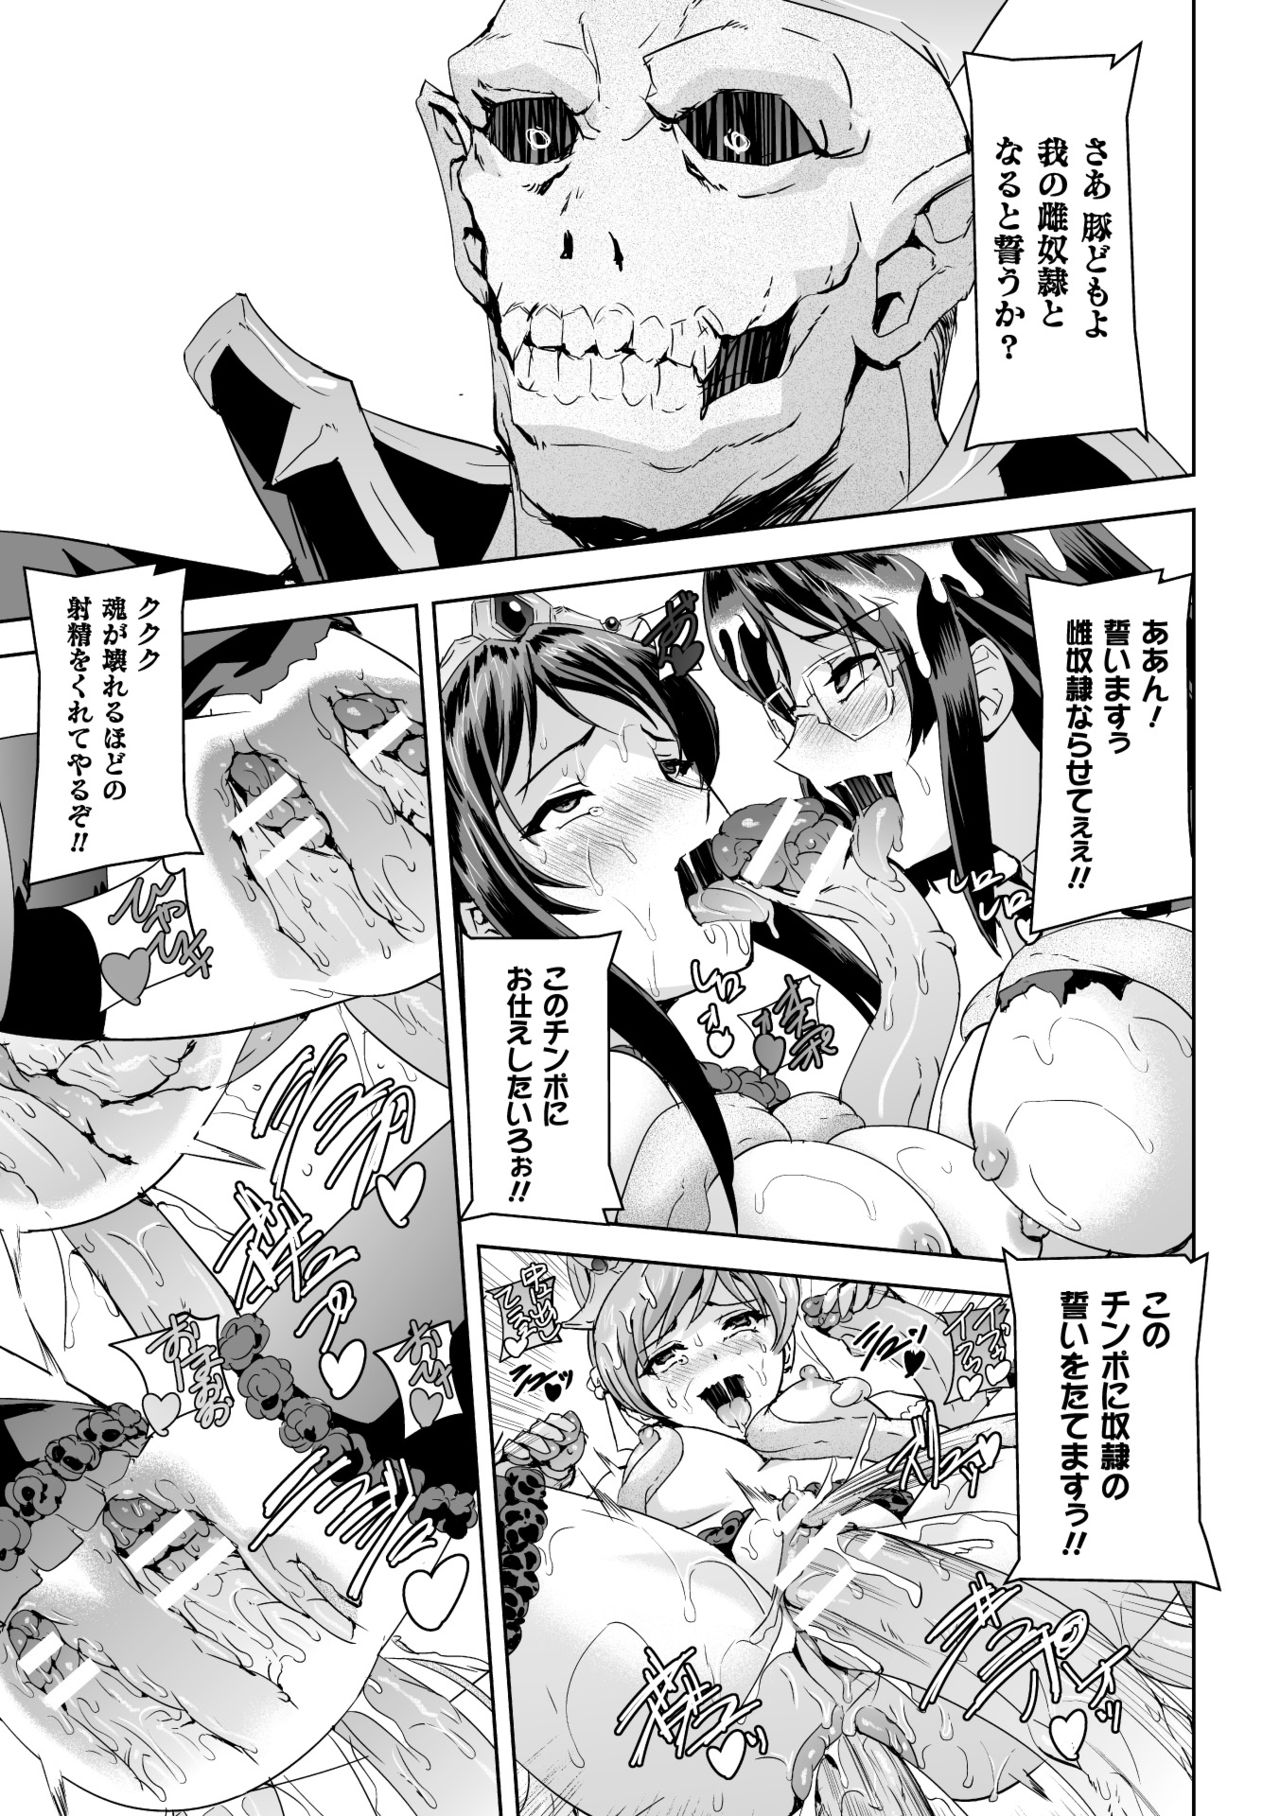 [Anthology] Seigi no Heroine Kangoku File Vol. 2 [Digital] page 43 full